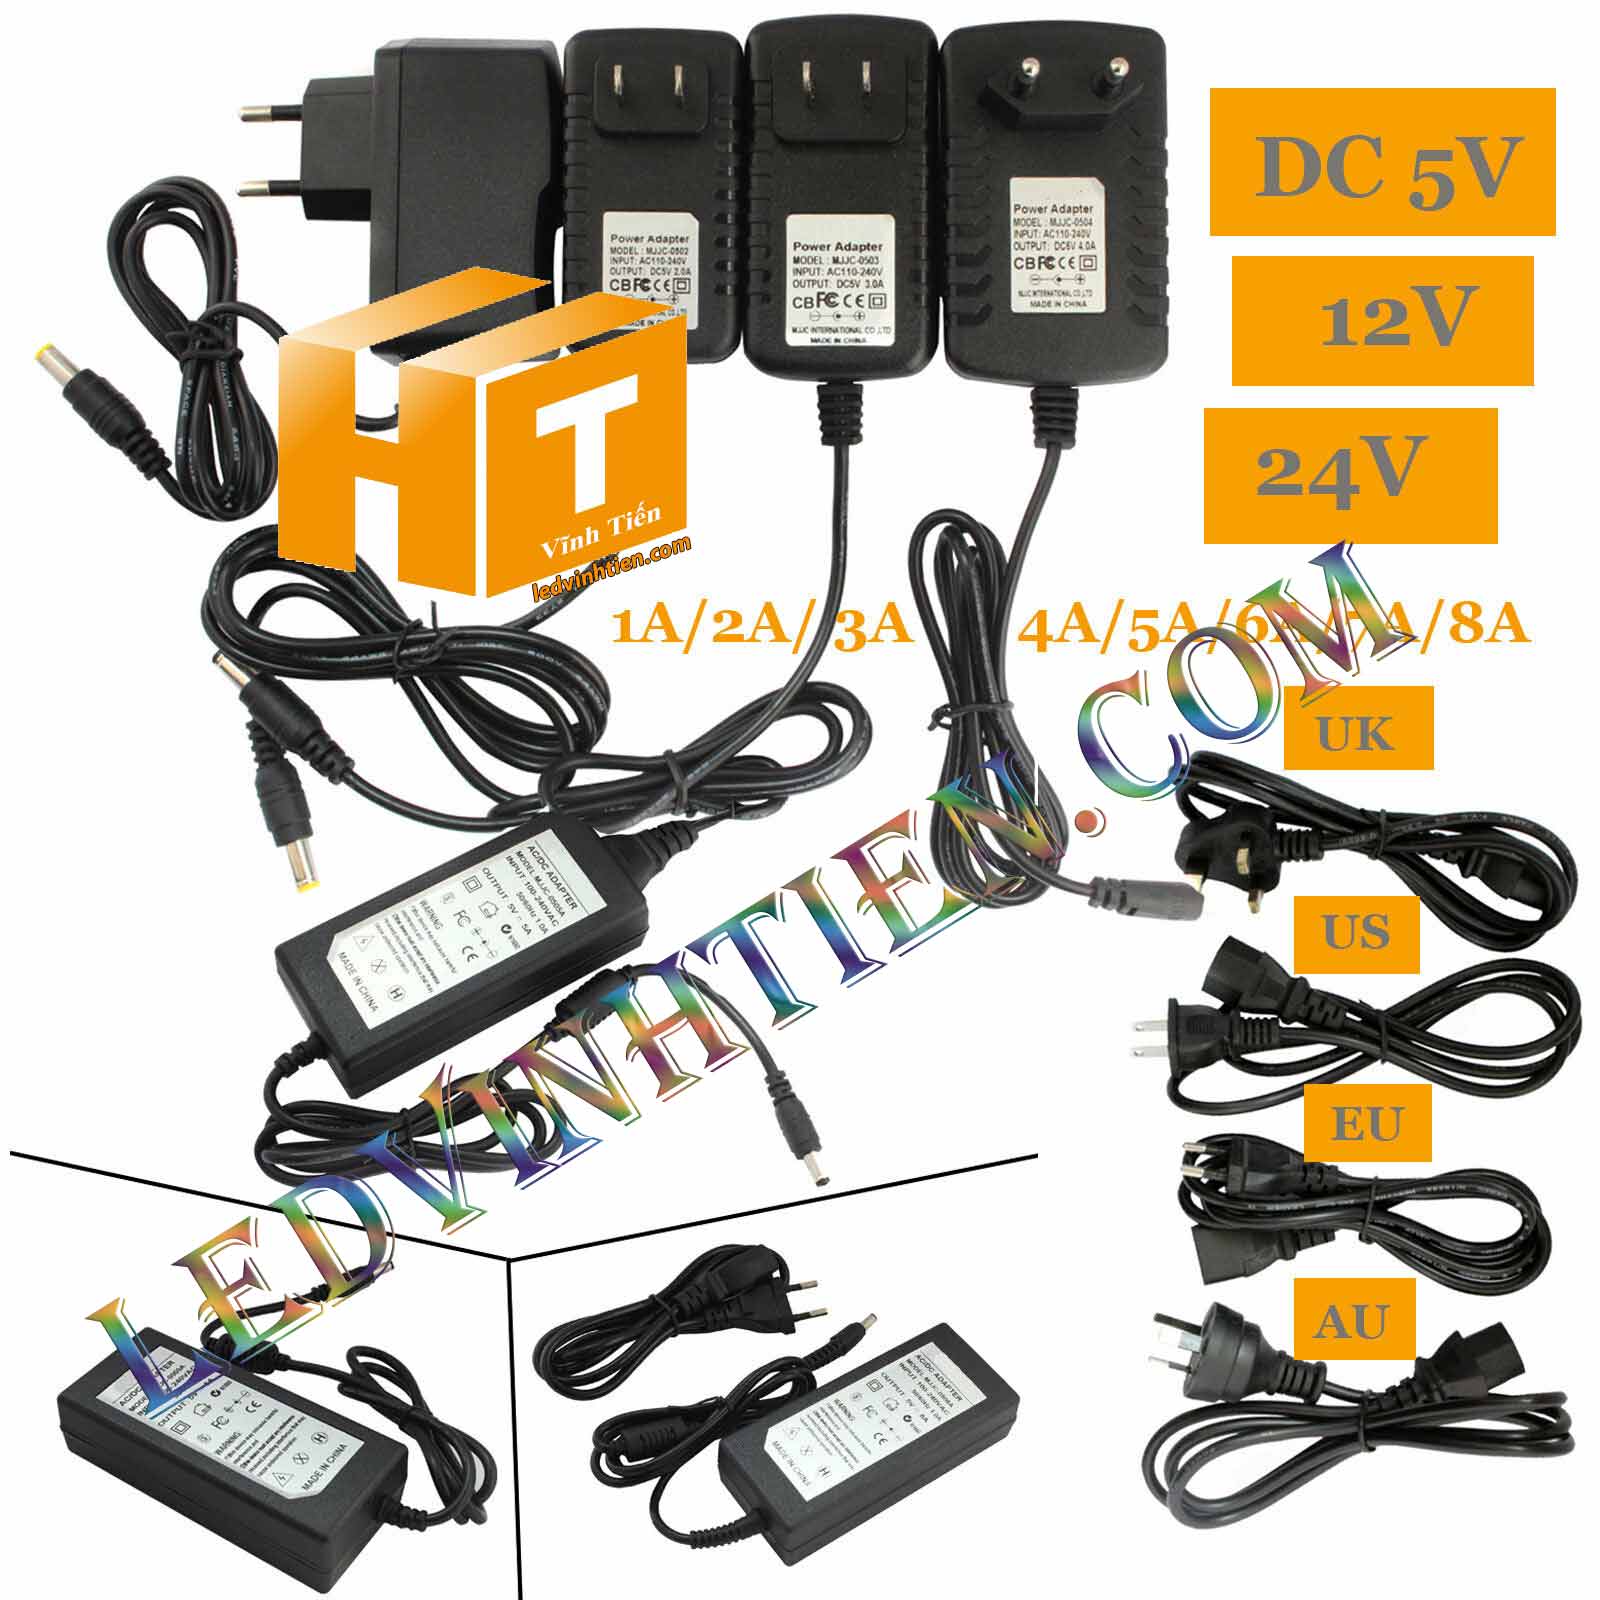 Adapter 12v 5a hay còn gọi nguồn adapter, adaptor 12V 5A nhỏ được cấp nguồn DC12V camera, Led quảng cáo, led hắt, led module, các loại đèn led chiếu sáng, như led thanh, led module, led dây, bơm mước mini, tự động hóa, BOARD MẠCH ĐIỆN TỬ XEM hình ảnh chụp mọi góc cạnh của nguồn adapter 12v 8a 96W loại tốt, giá rẻ, chất lượng, đủ ampe, có quạt, nhôm tản nhiệt, sản phẩm chính hãng ledvinhtien.com Hình ảnh chụp mọi góc cạnh của adapter DC12V 5A chính hãng led vĩnh tiến